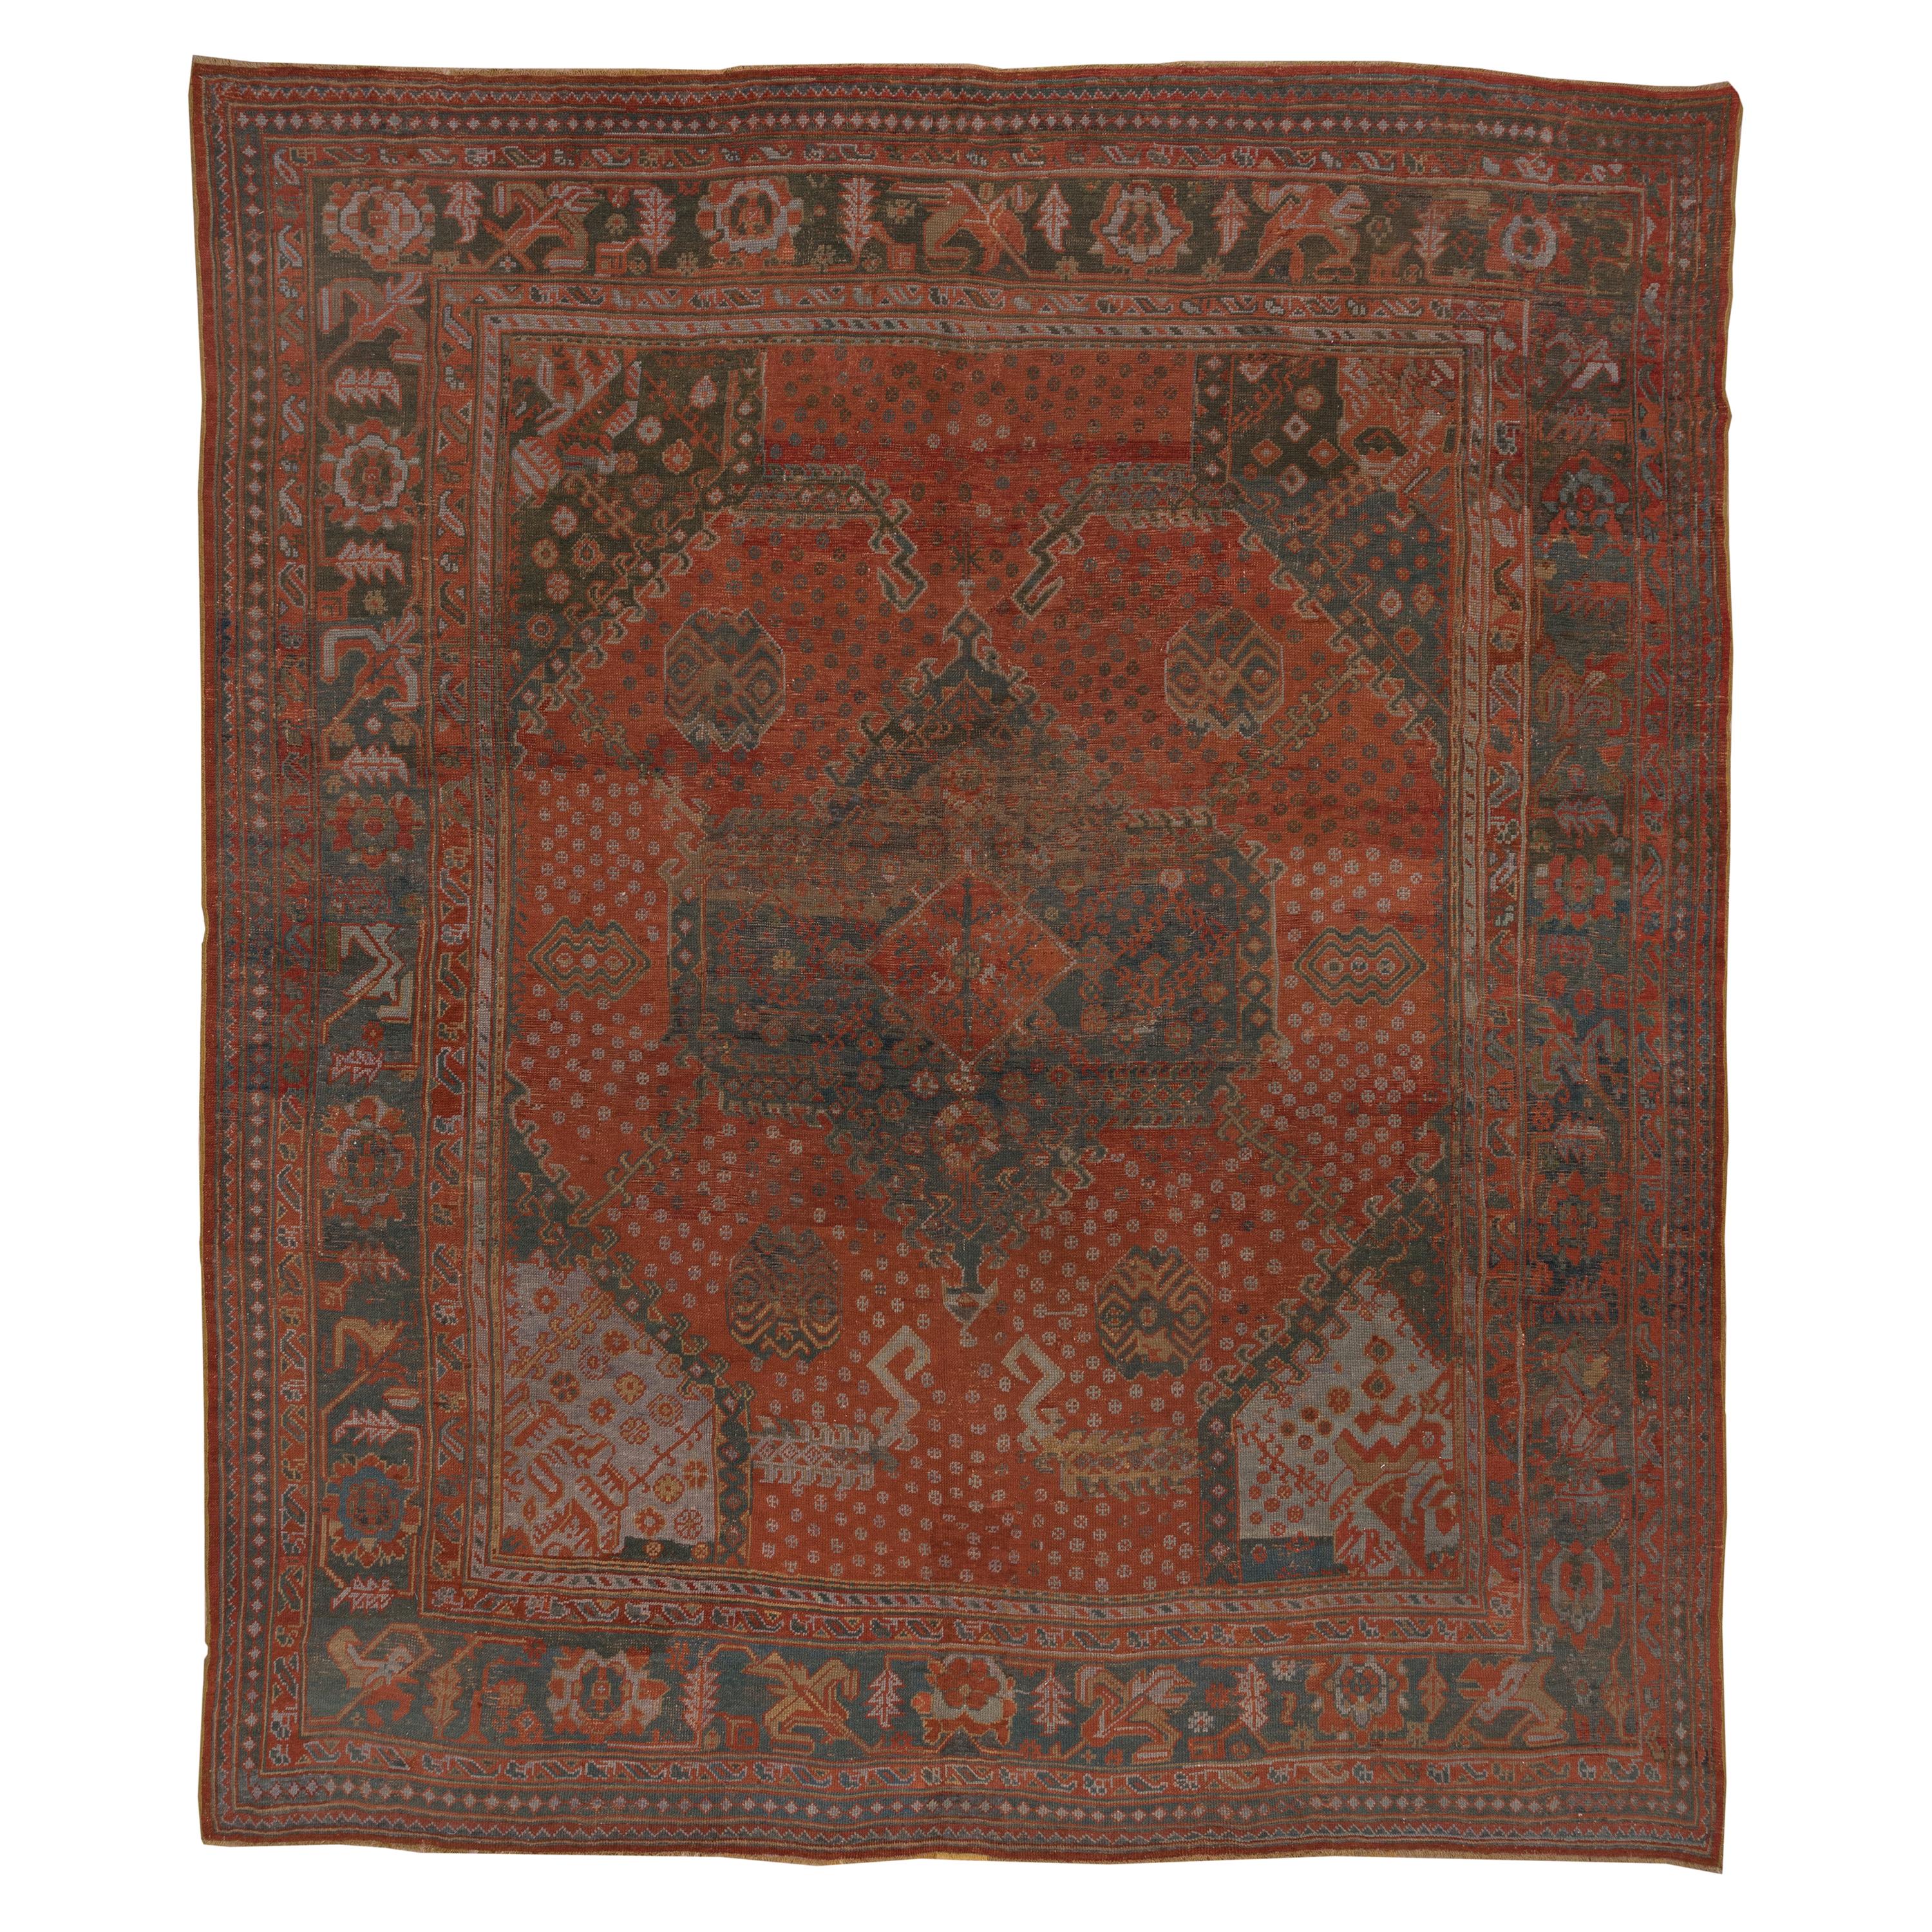 Antiker türkischer Oushak-Teppich, Palette in Orange und Teal, ca. 1920er Jahre